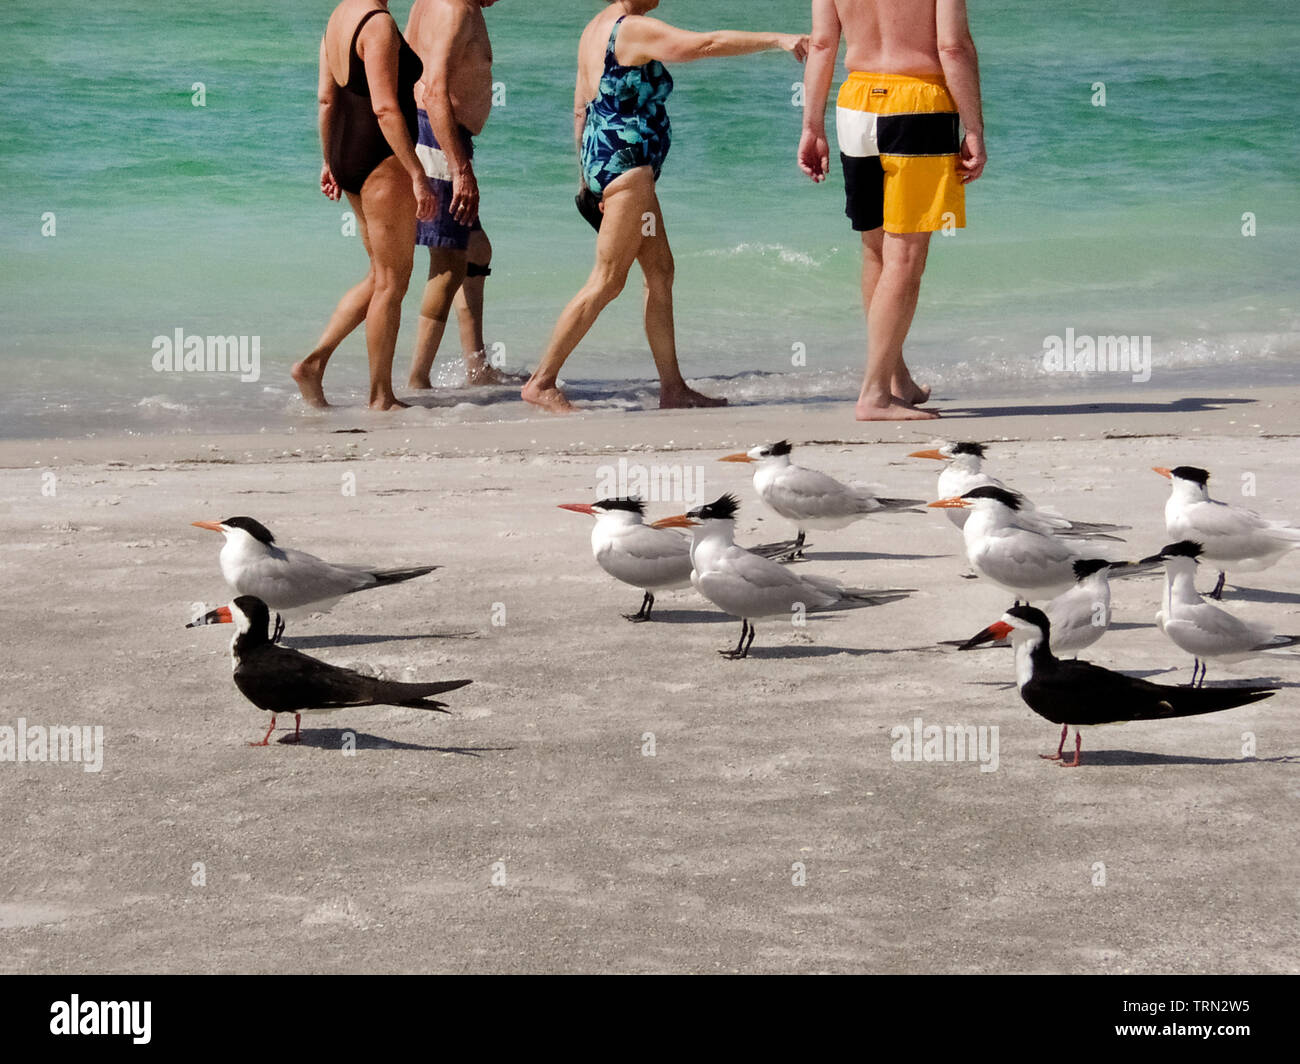 Diversi royal sterne (Thalasseus maximus) e due palette nero (Rynchops niger) poggiano su di una spiaggia di sabbia indisturbato da anziani turisti in costume da bagno camminando dietro di loro nelle acque tropicali del Golfo del Messico lungo Longboat Key nella contea di Sarasota, Florida, Stati Uniti d'America. Uccelli costieri e vacanzieri condividono molte delle spiagge che rim il1,350-miglio (2,173-chilometro) Costa del Sole Stato. Foto Stock